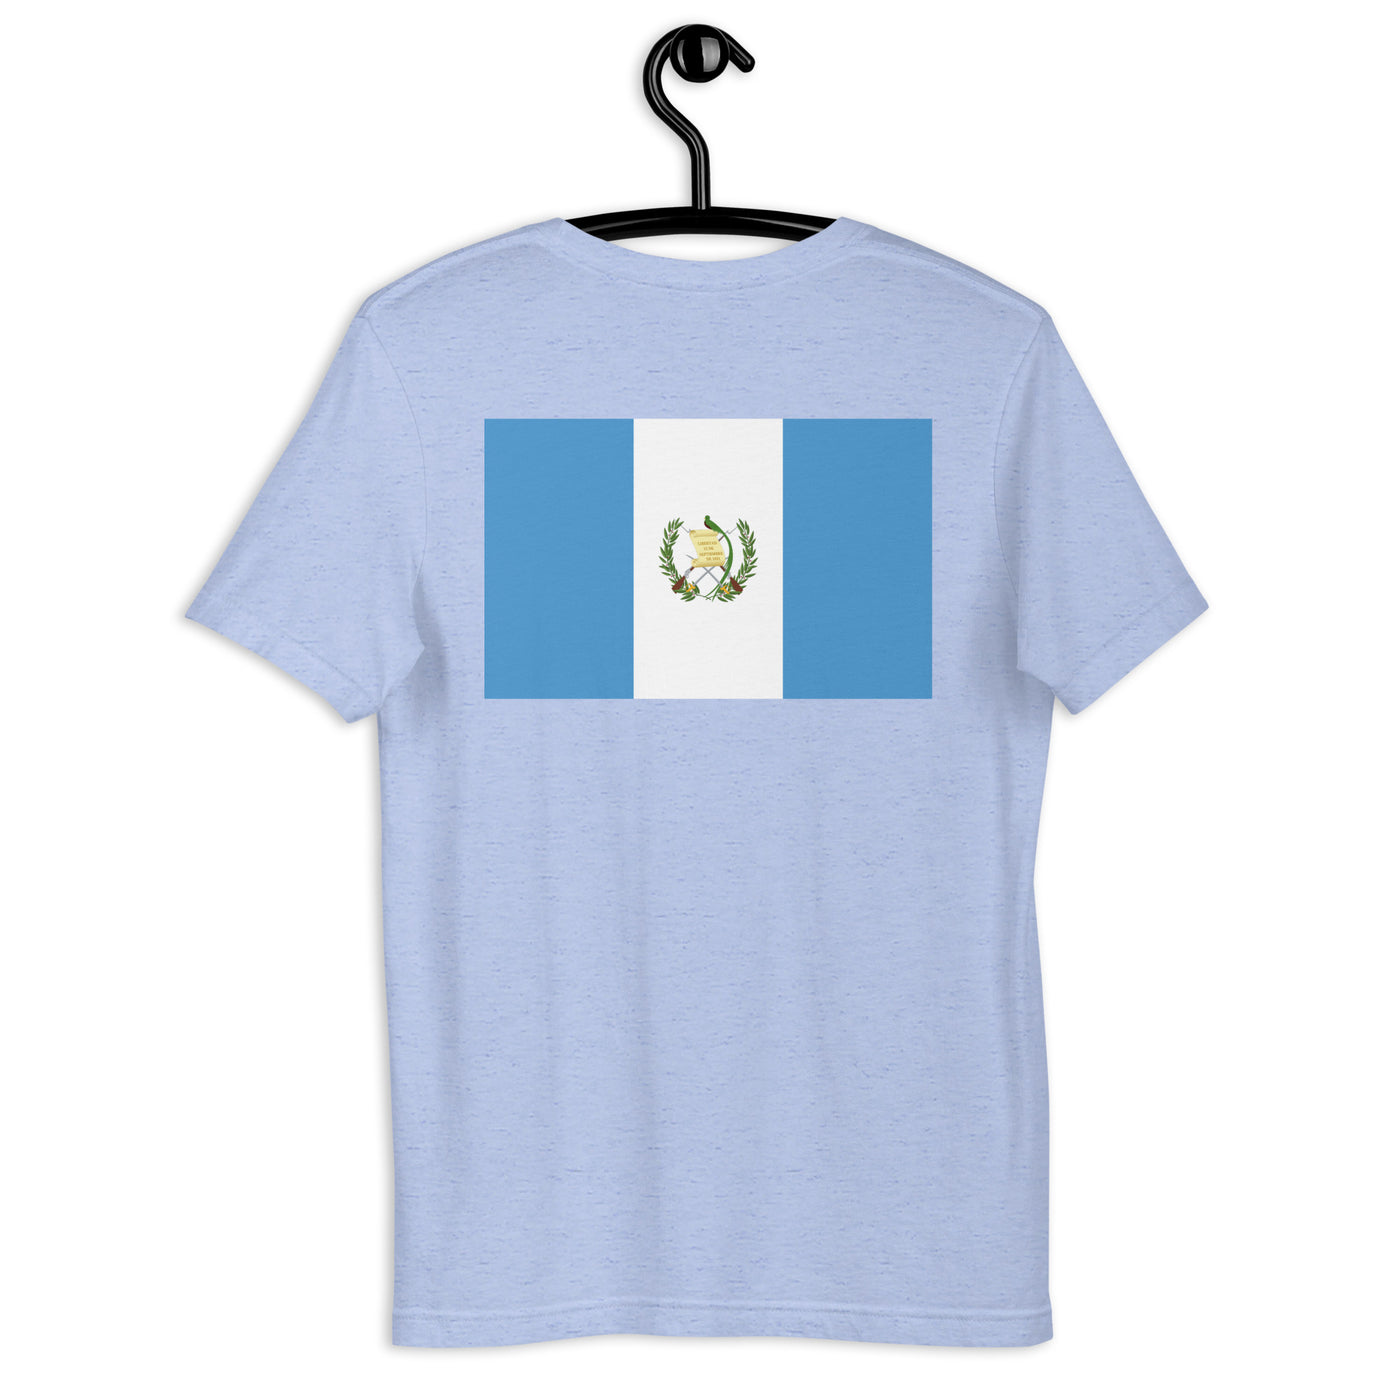 Guatemala POR VIDA (Black Text) Unisex t-shirt